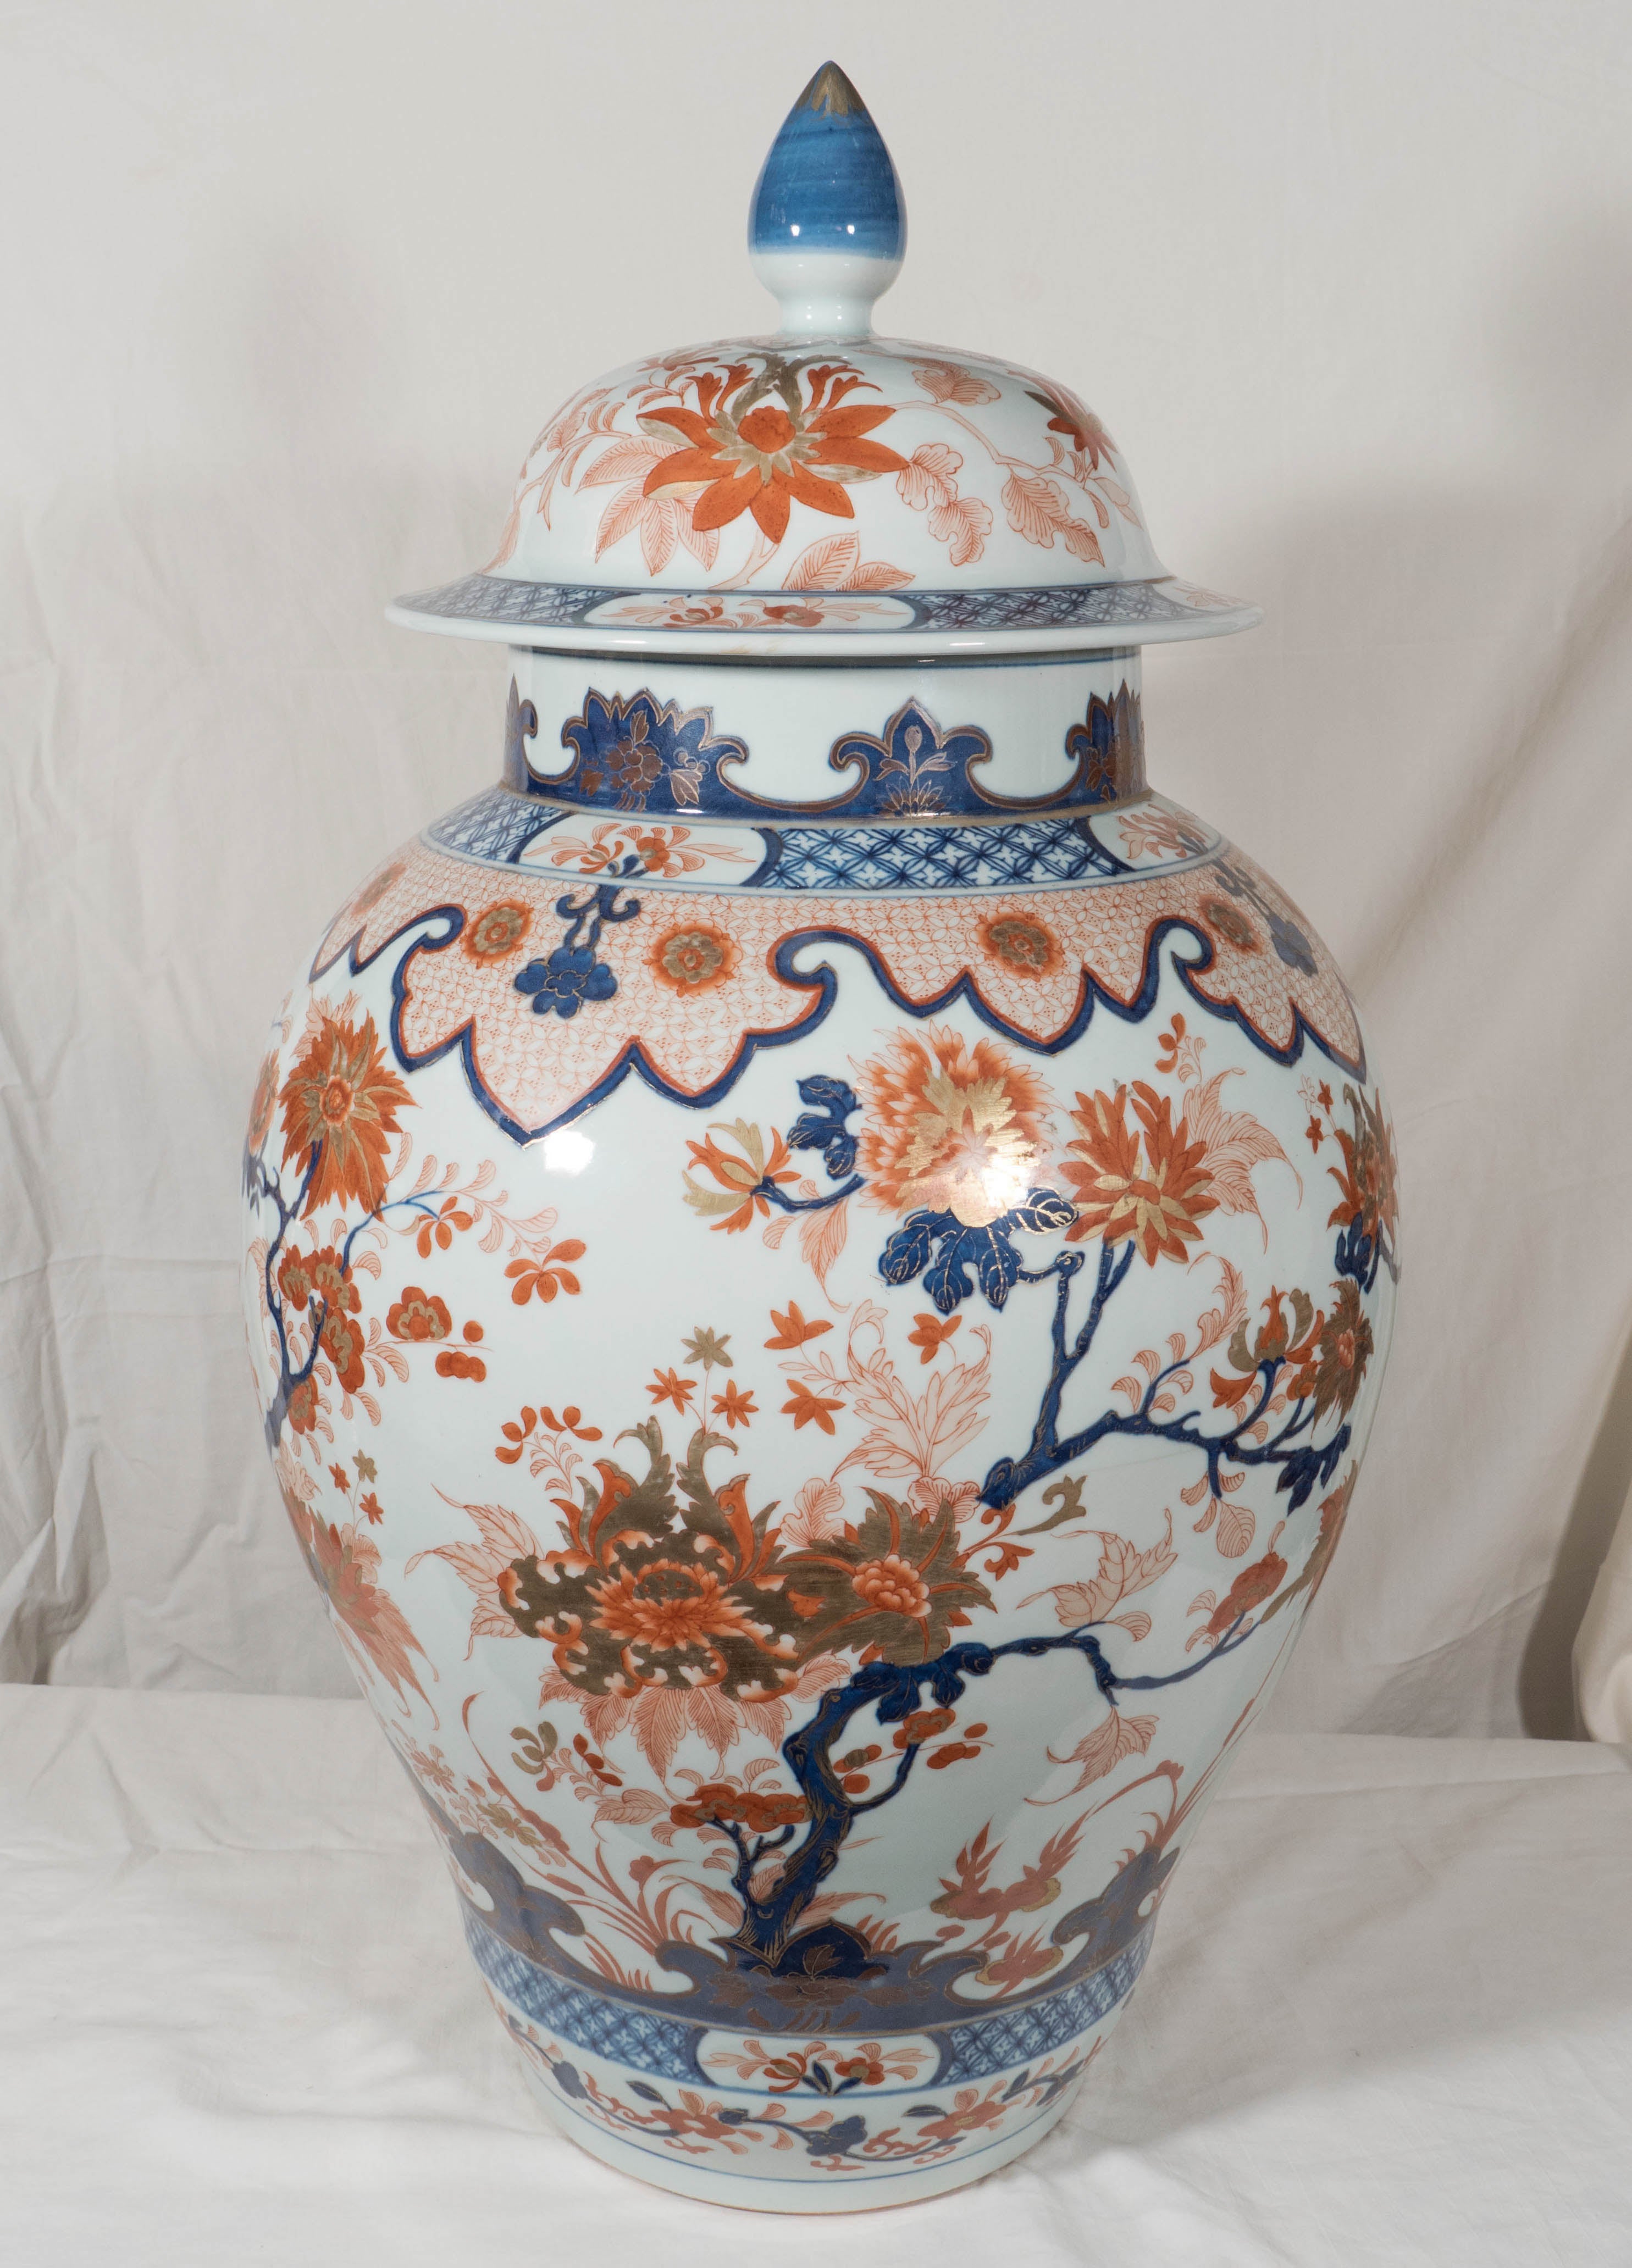 Massive Pair of Chinese Imari Covered Vases